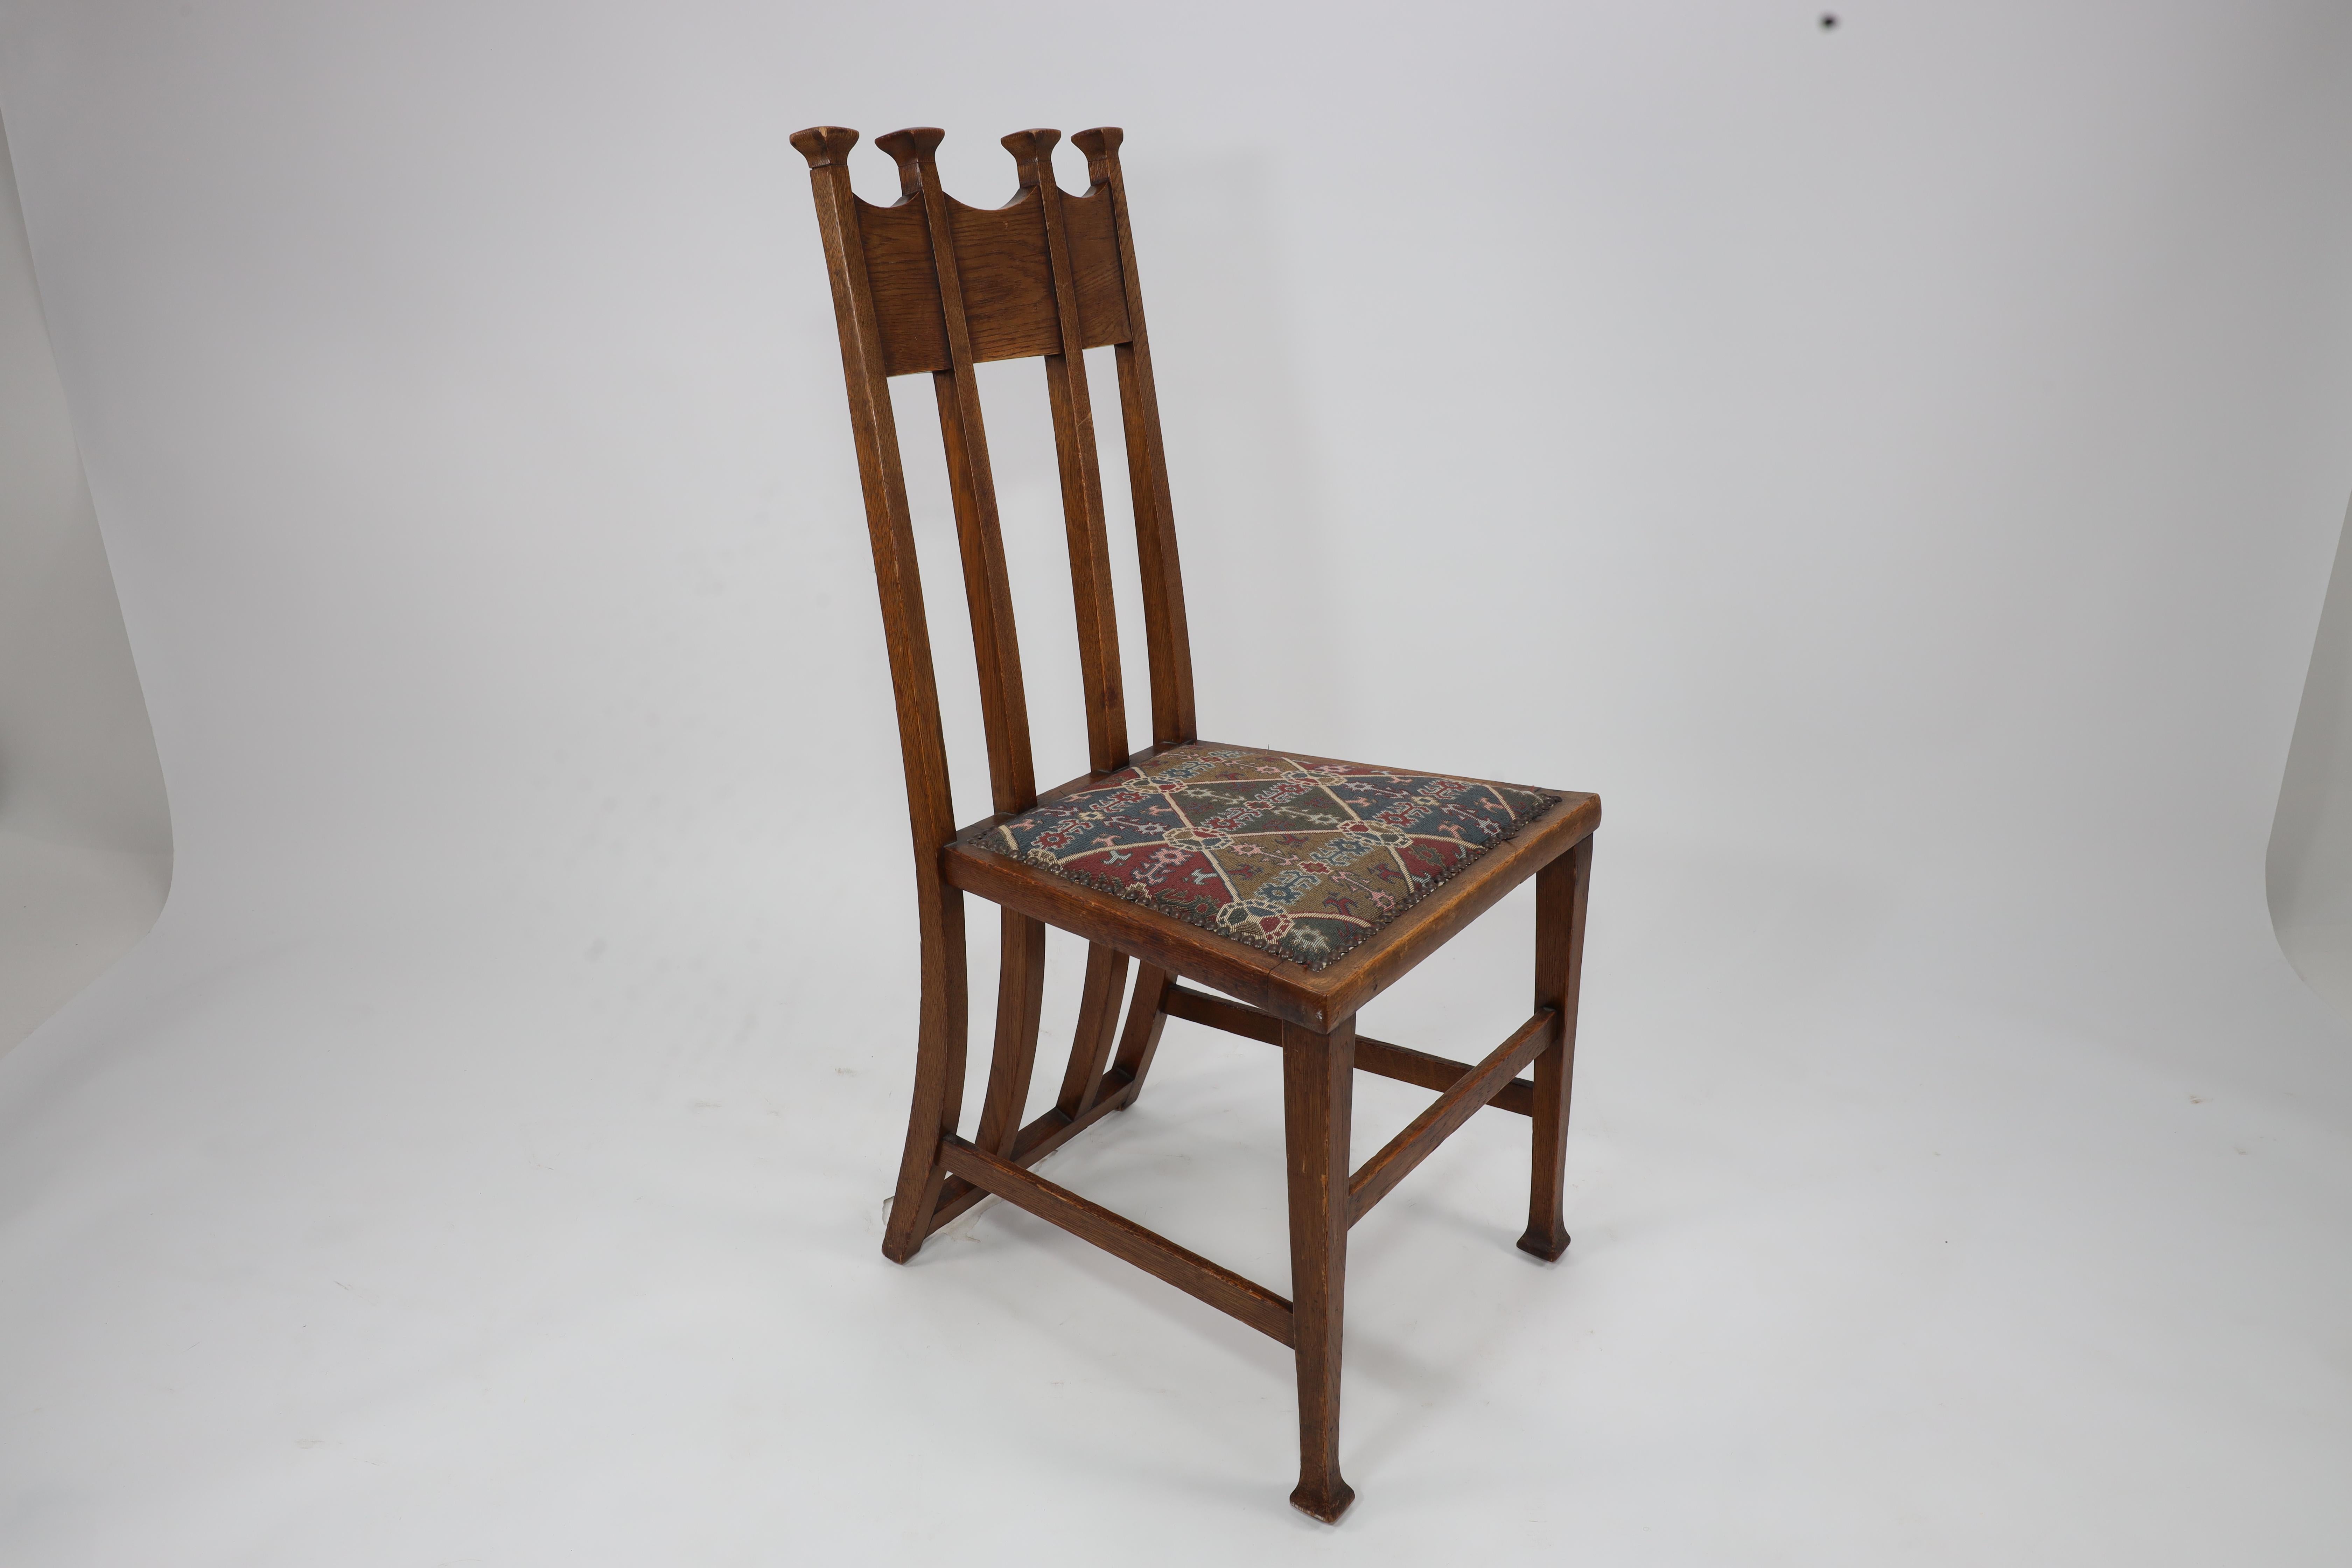 George Montague Ellwood. Fabriqué par J S Henry.
Rare ensemble de huit chaises de salle à manger et de deux fauteuils en chêne de style Arts and Crafts, avec des plateaux coiffés en forme de trône et de merveilleux supports de dossier en forme de